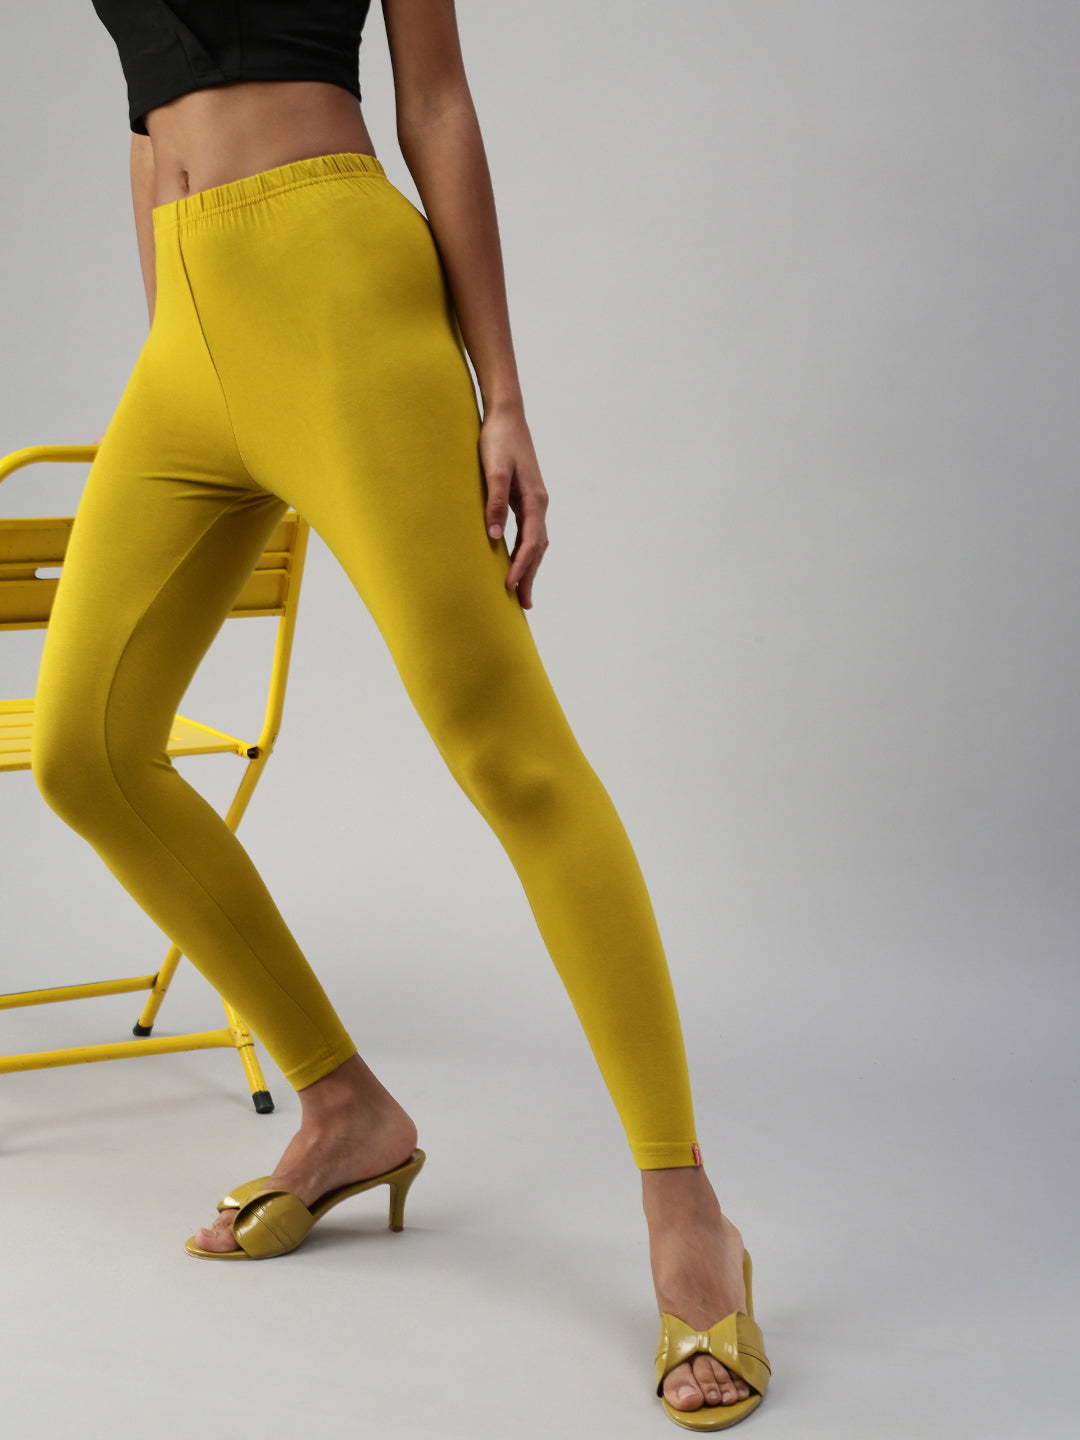 Prisma Ankle Leggings - Stylish Mango Design